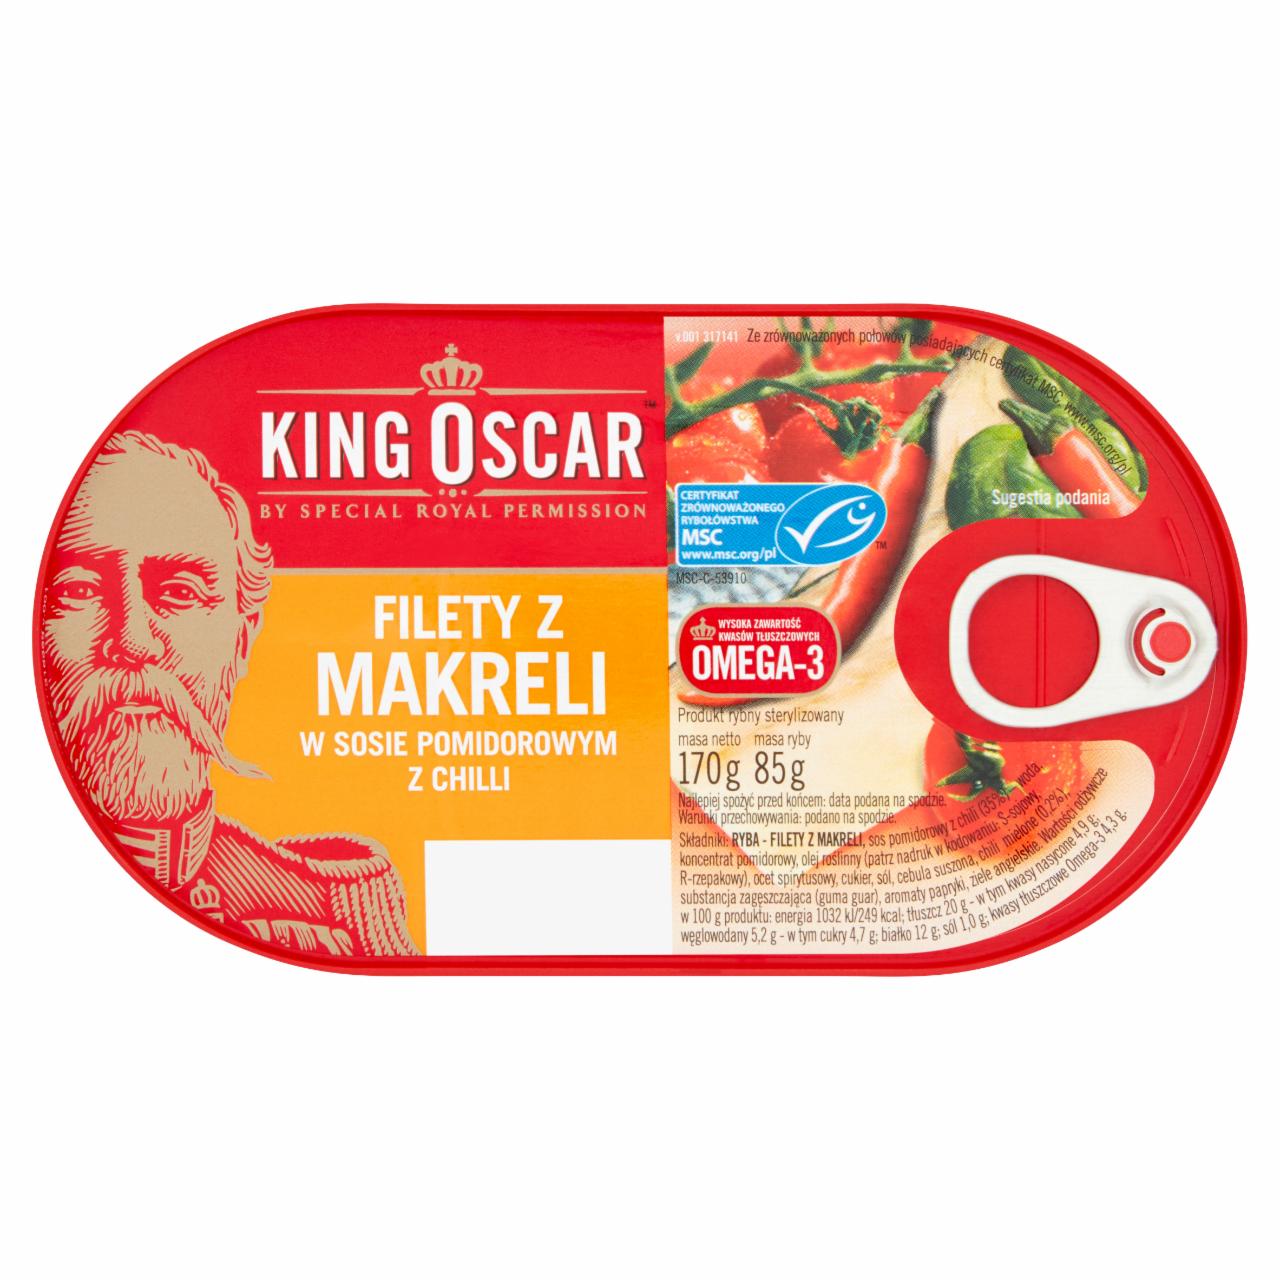 Zdjęcia - King Oscar Filety z makreli w sosie pomidorowym z chilli 170 g